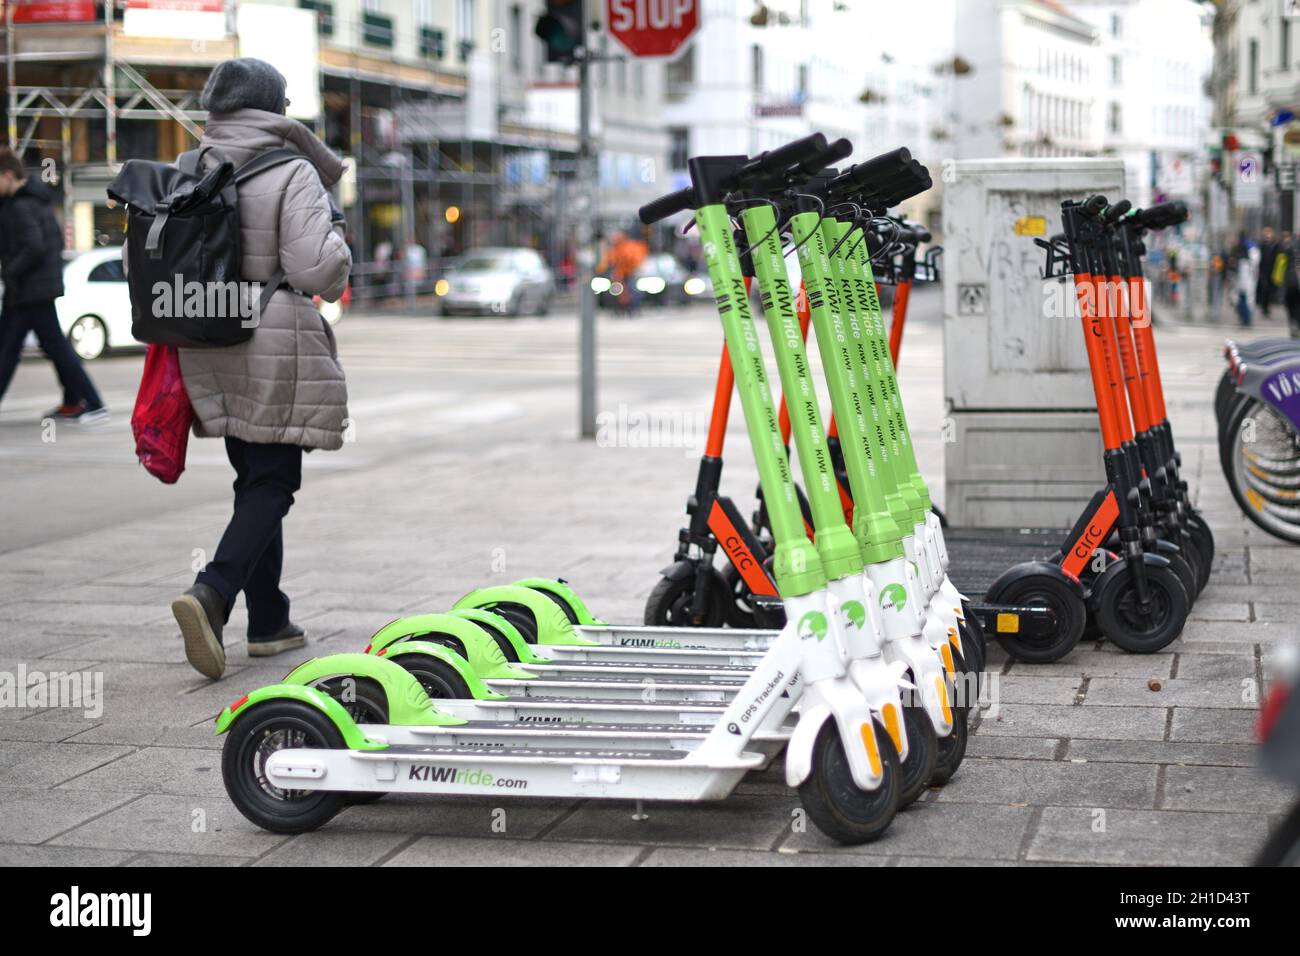 E-Scooter zum Mieten erfreuen sich in Wien großer Beliebtheit. Im Jahr 2020 sind in der österreichischen Hauptstadt acht Anbieter aktiv. - E-scooters Stock Photo